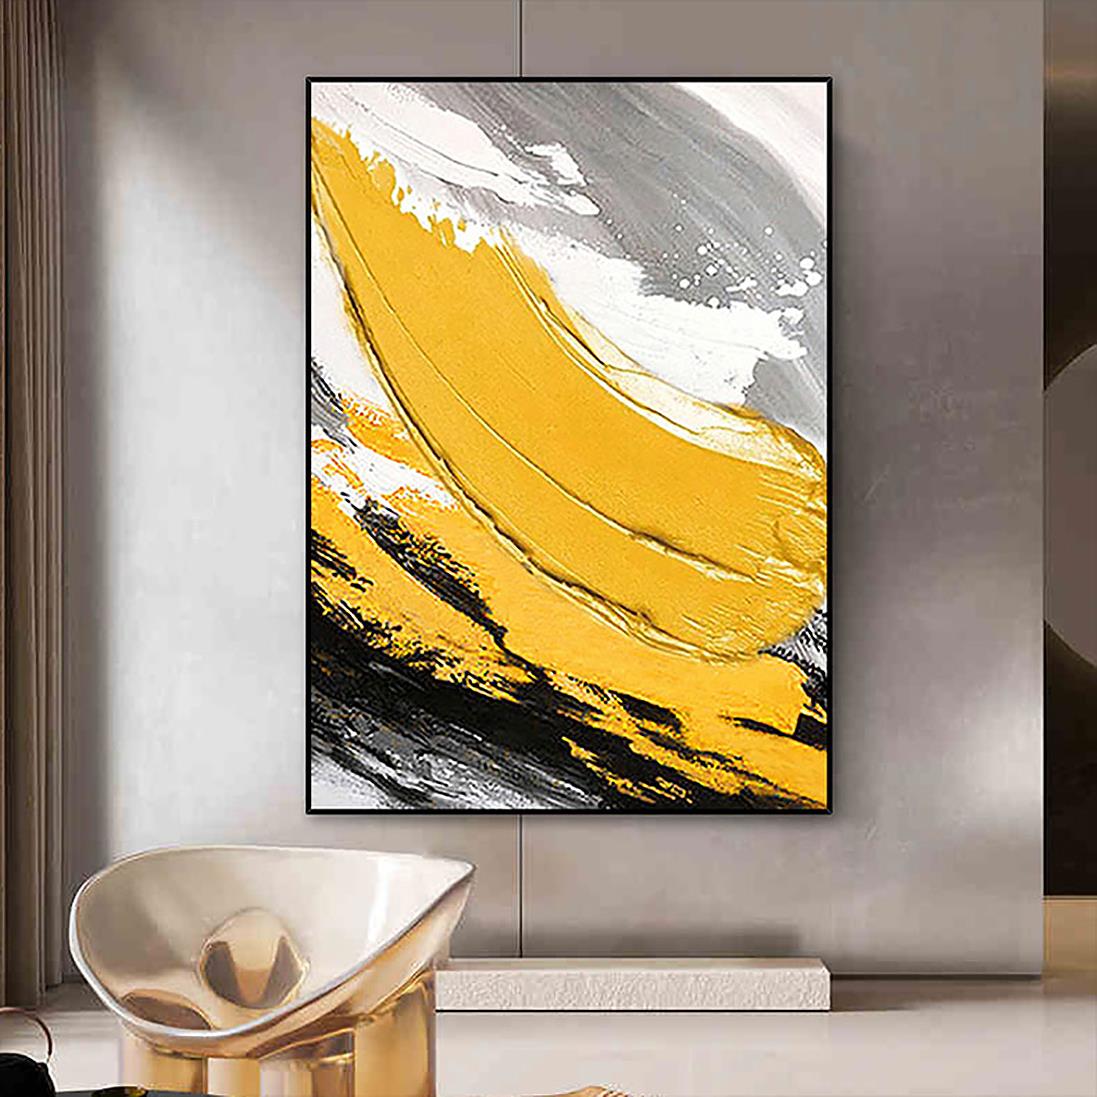 パレット ナイフ ウォール アート ミニマリズム テクスチャによるブラシ抽象的な黄色油絵